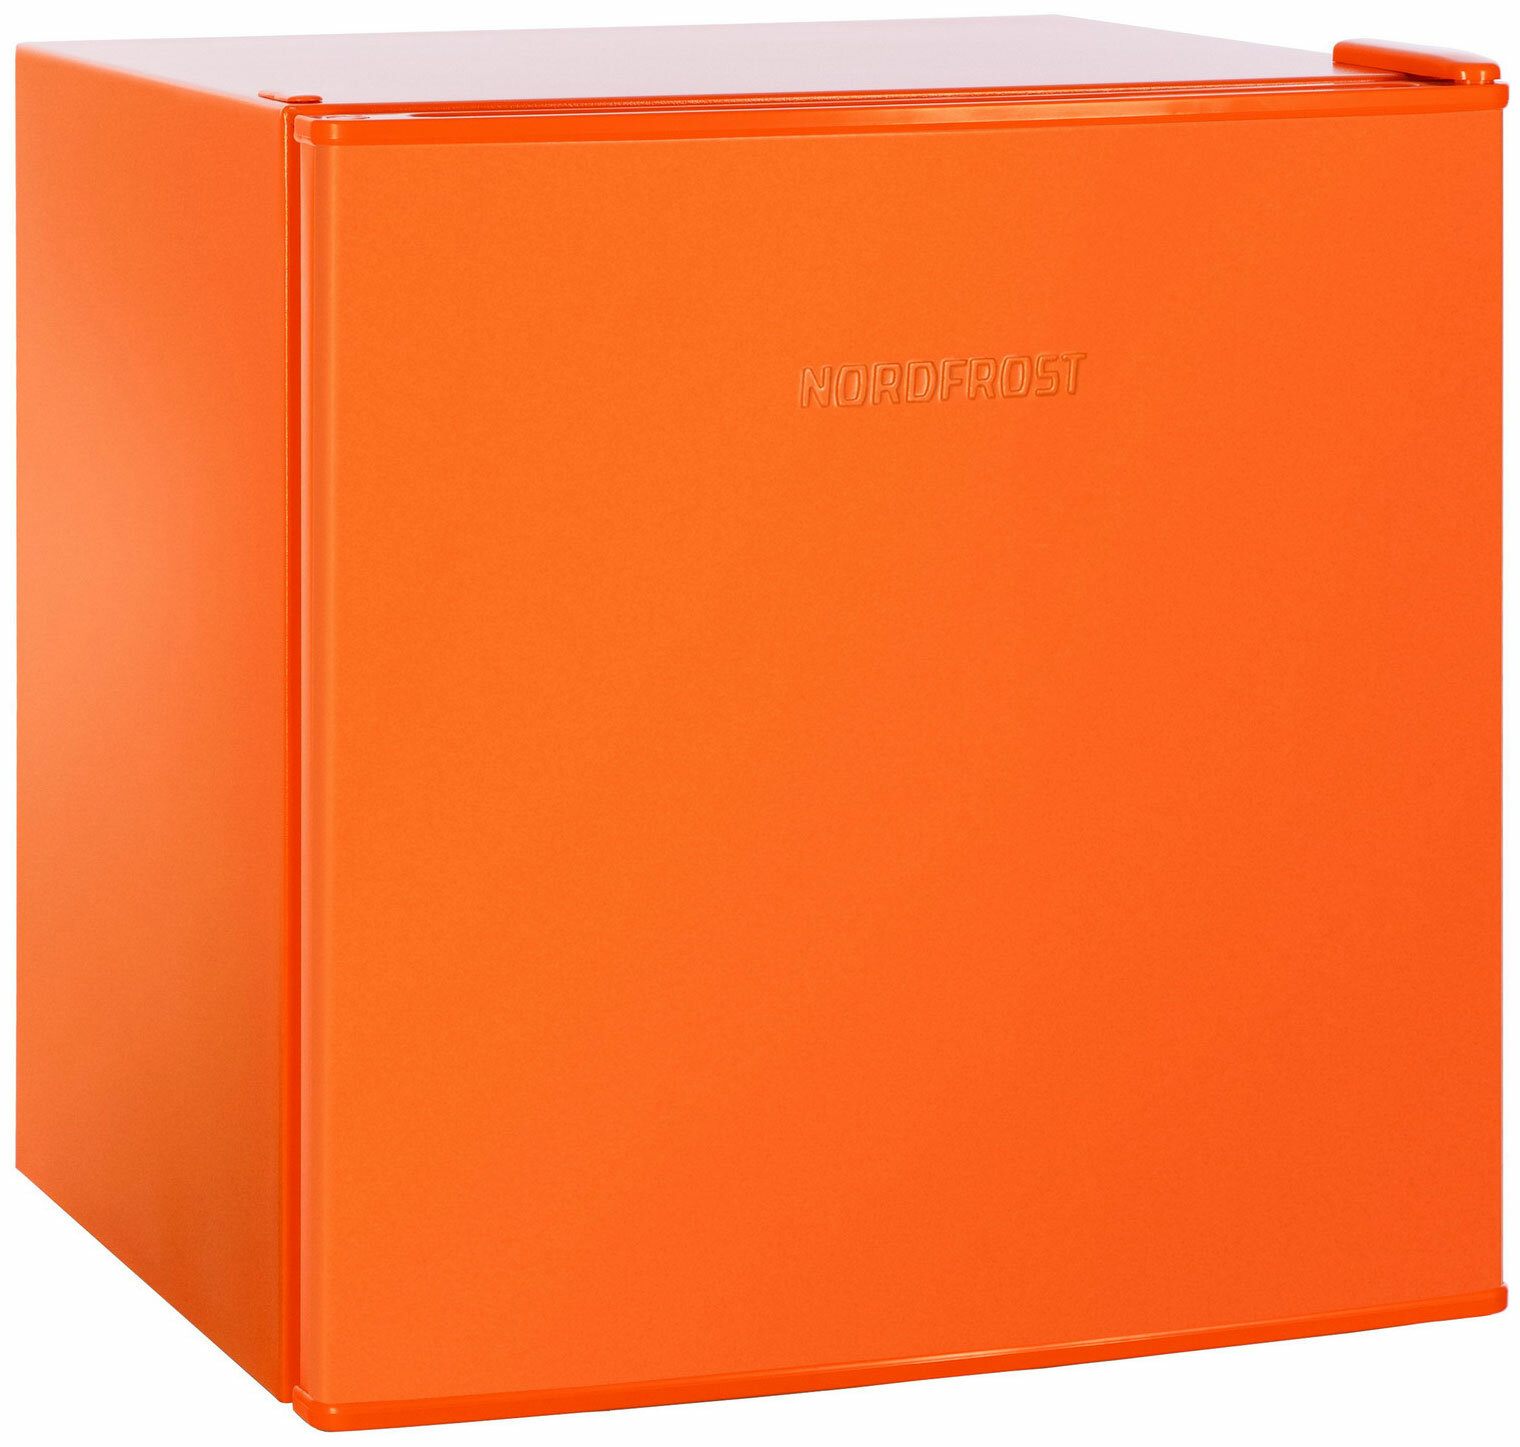 Минихолодильник NORDFROST NR 402 Or оранжевый матовый